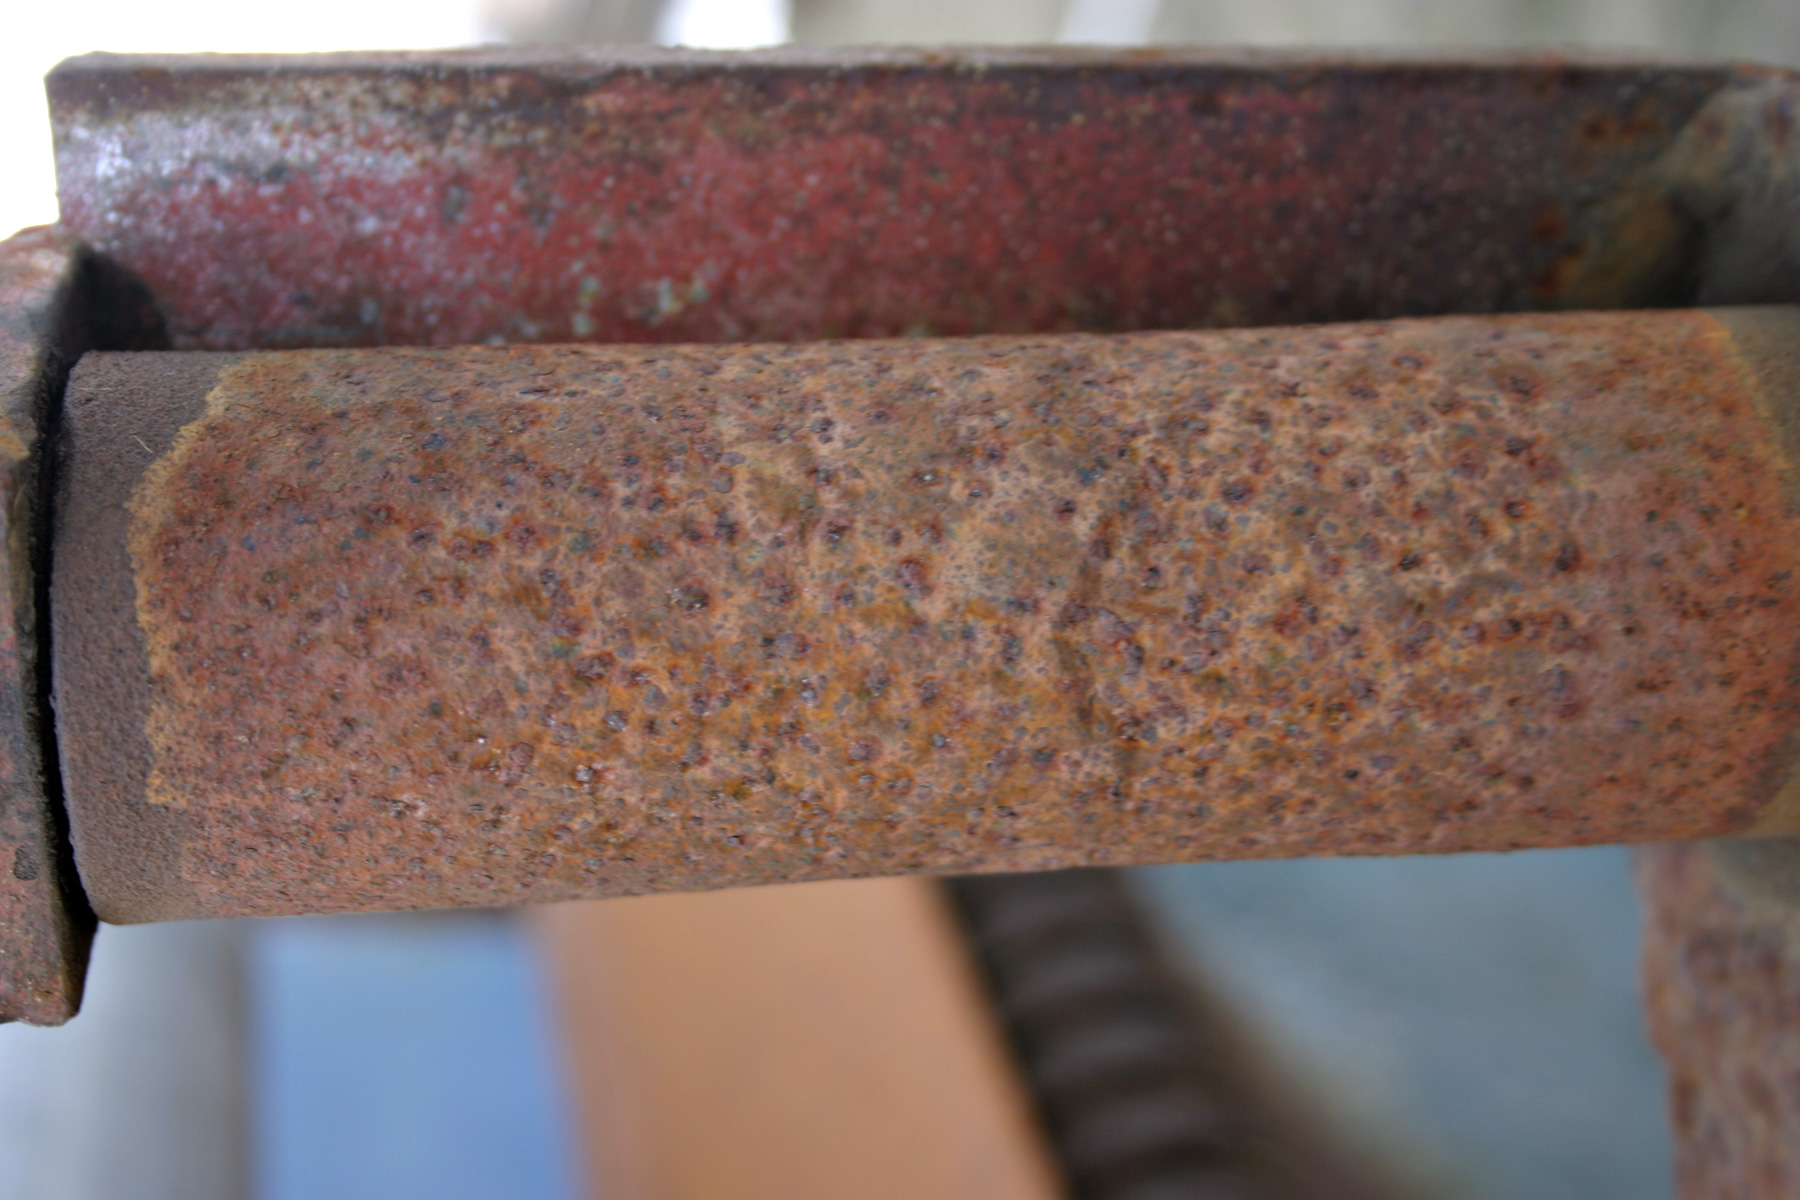 Metal pipe rust фото 23